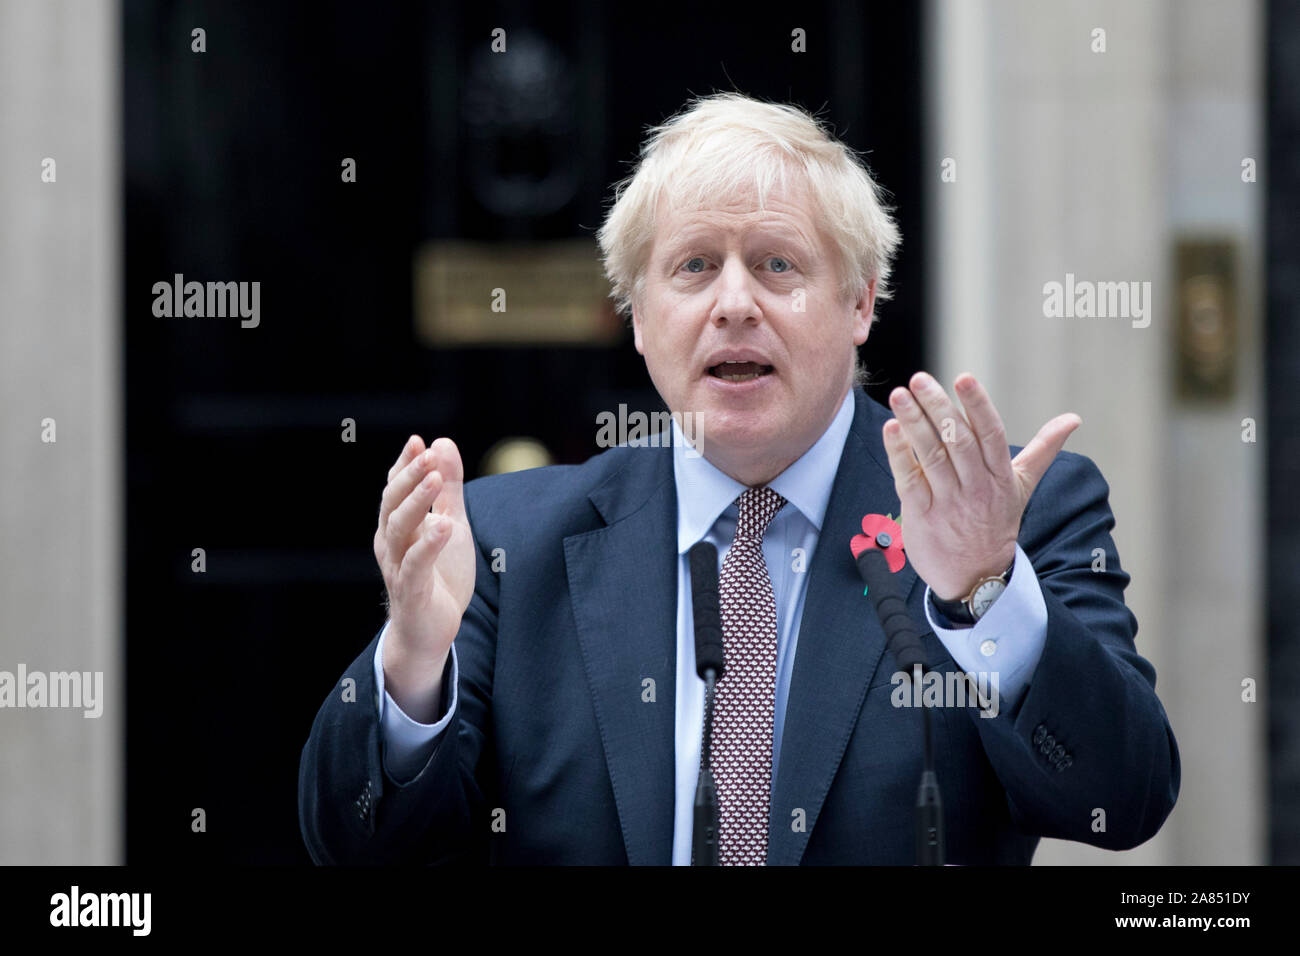 Premierminister Boris Johnson sprechen in der Londoner Downing Street nach einer Audienz bei Königin Elizabeth II. im Buckingham-Palast, die den offiziellen Beginn der allgemeinen Wahl markiert. Stockfoto